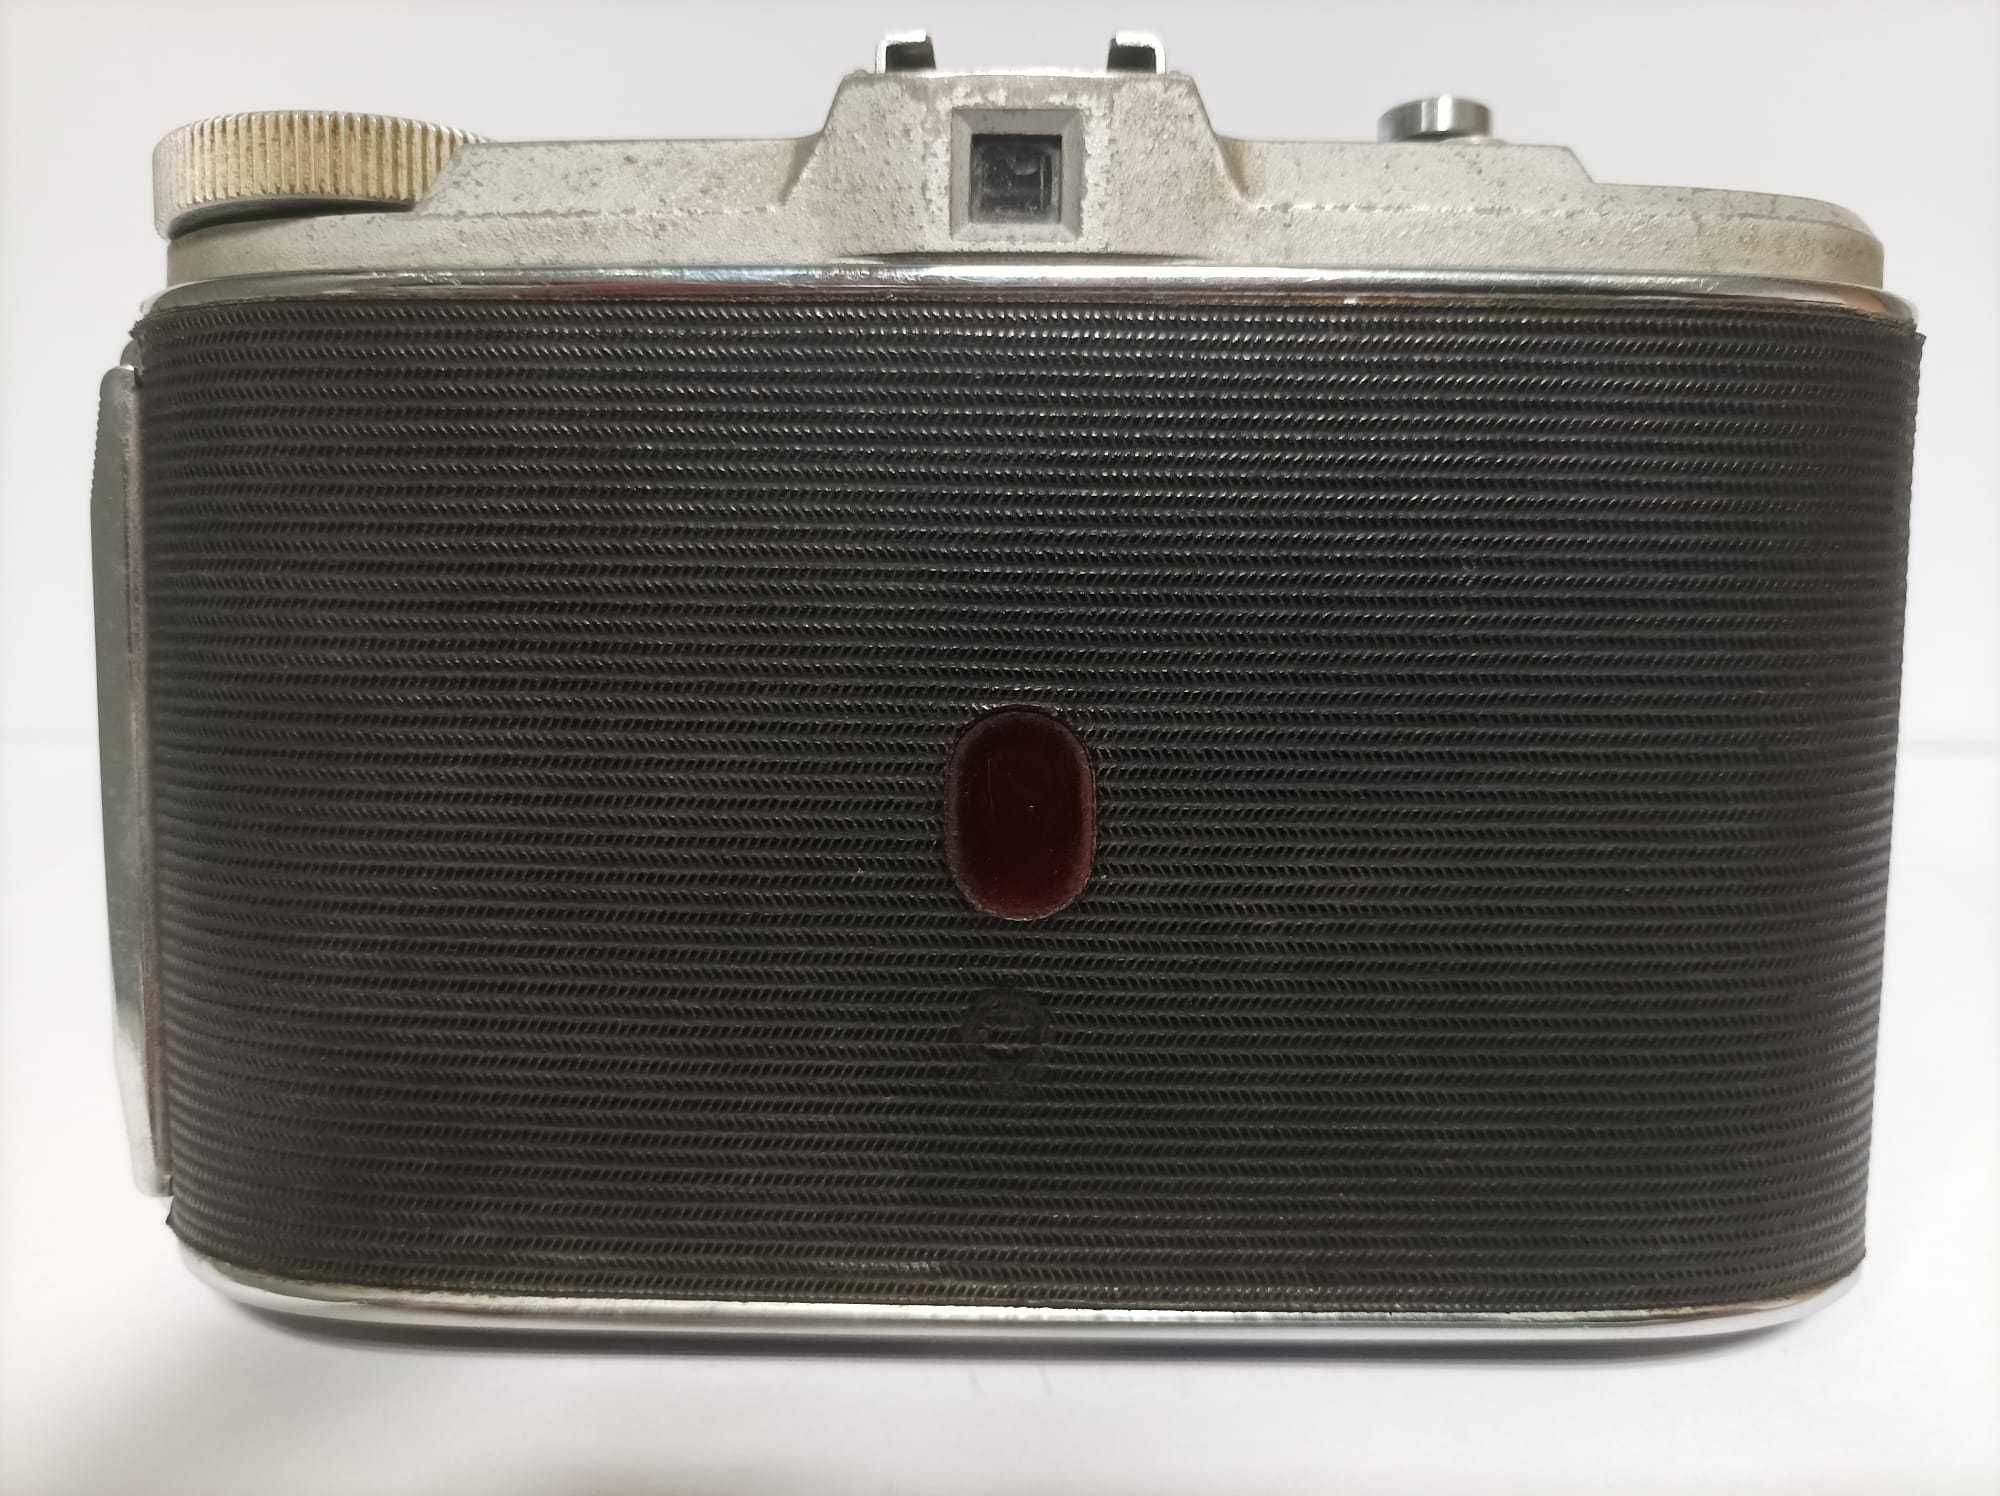 Máquina fotográfica de fole antiga - AGFA Isolette